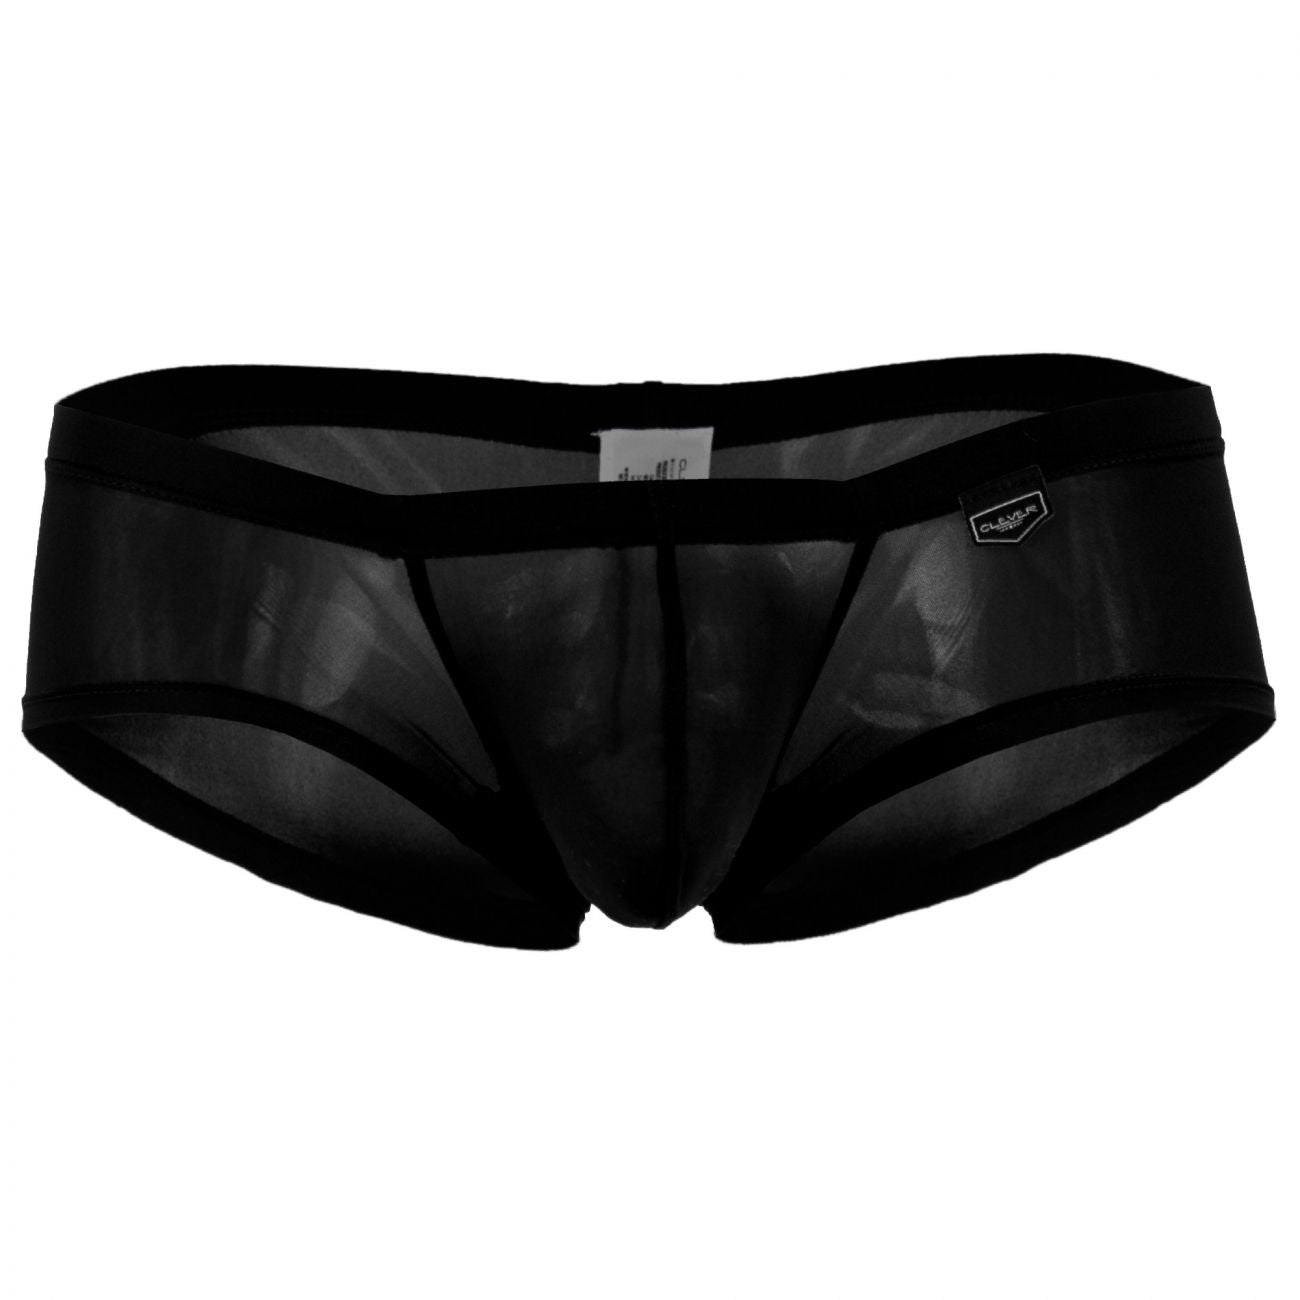 2PK Australian Trunks | Australian Men's Underwear | Yummy Look